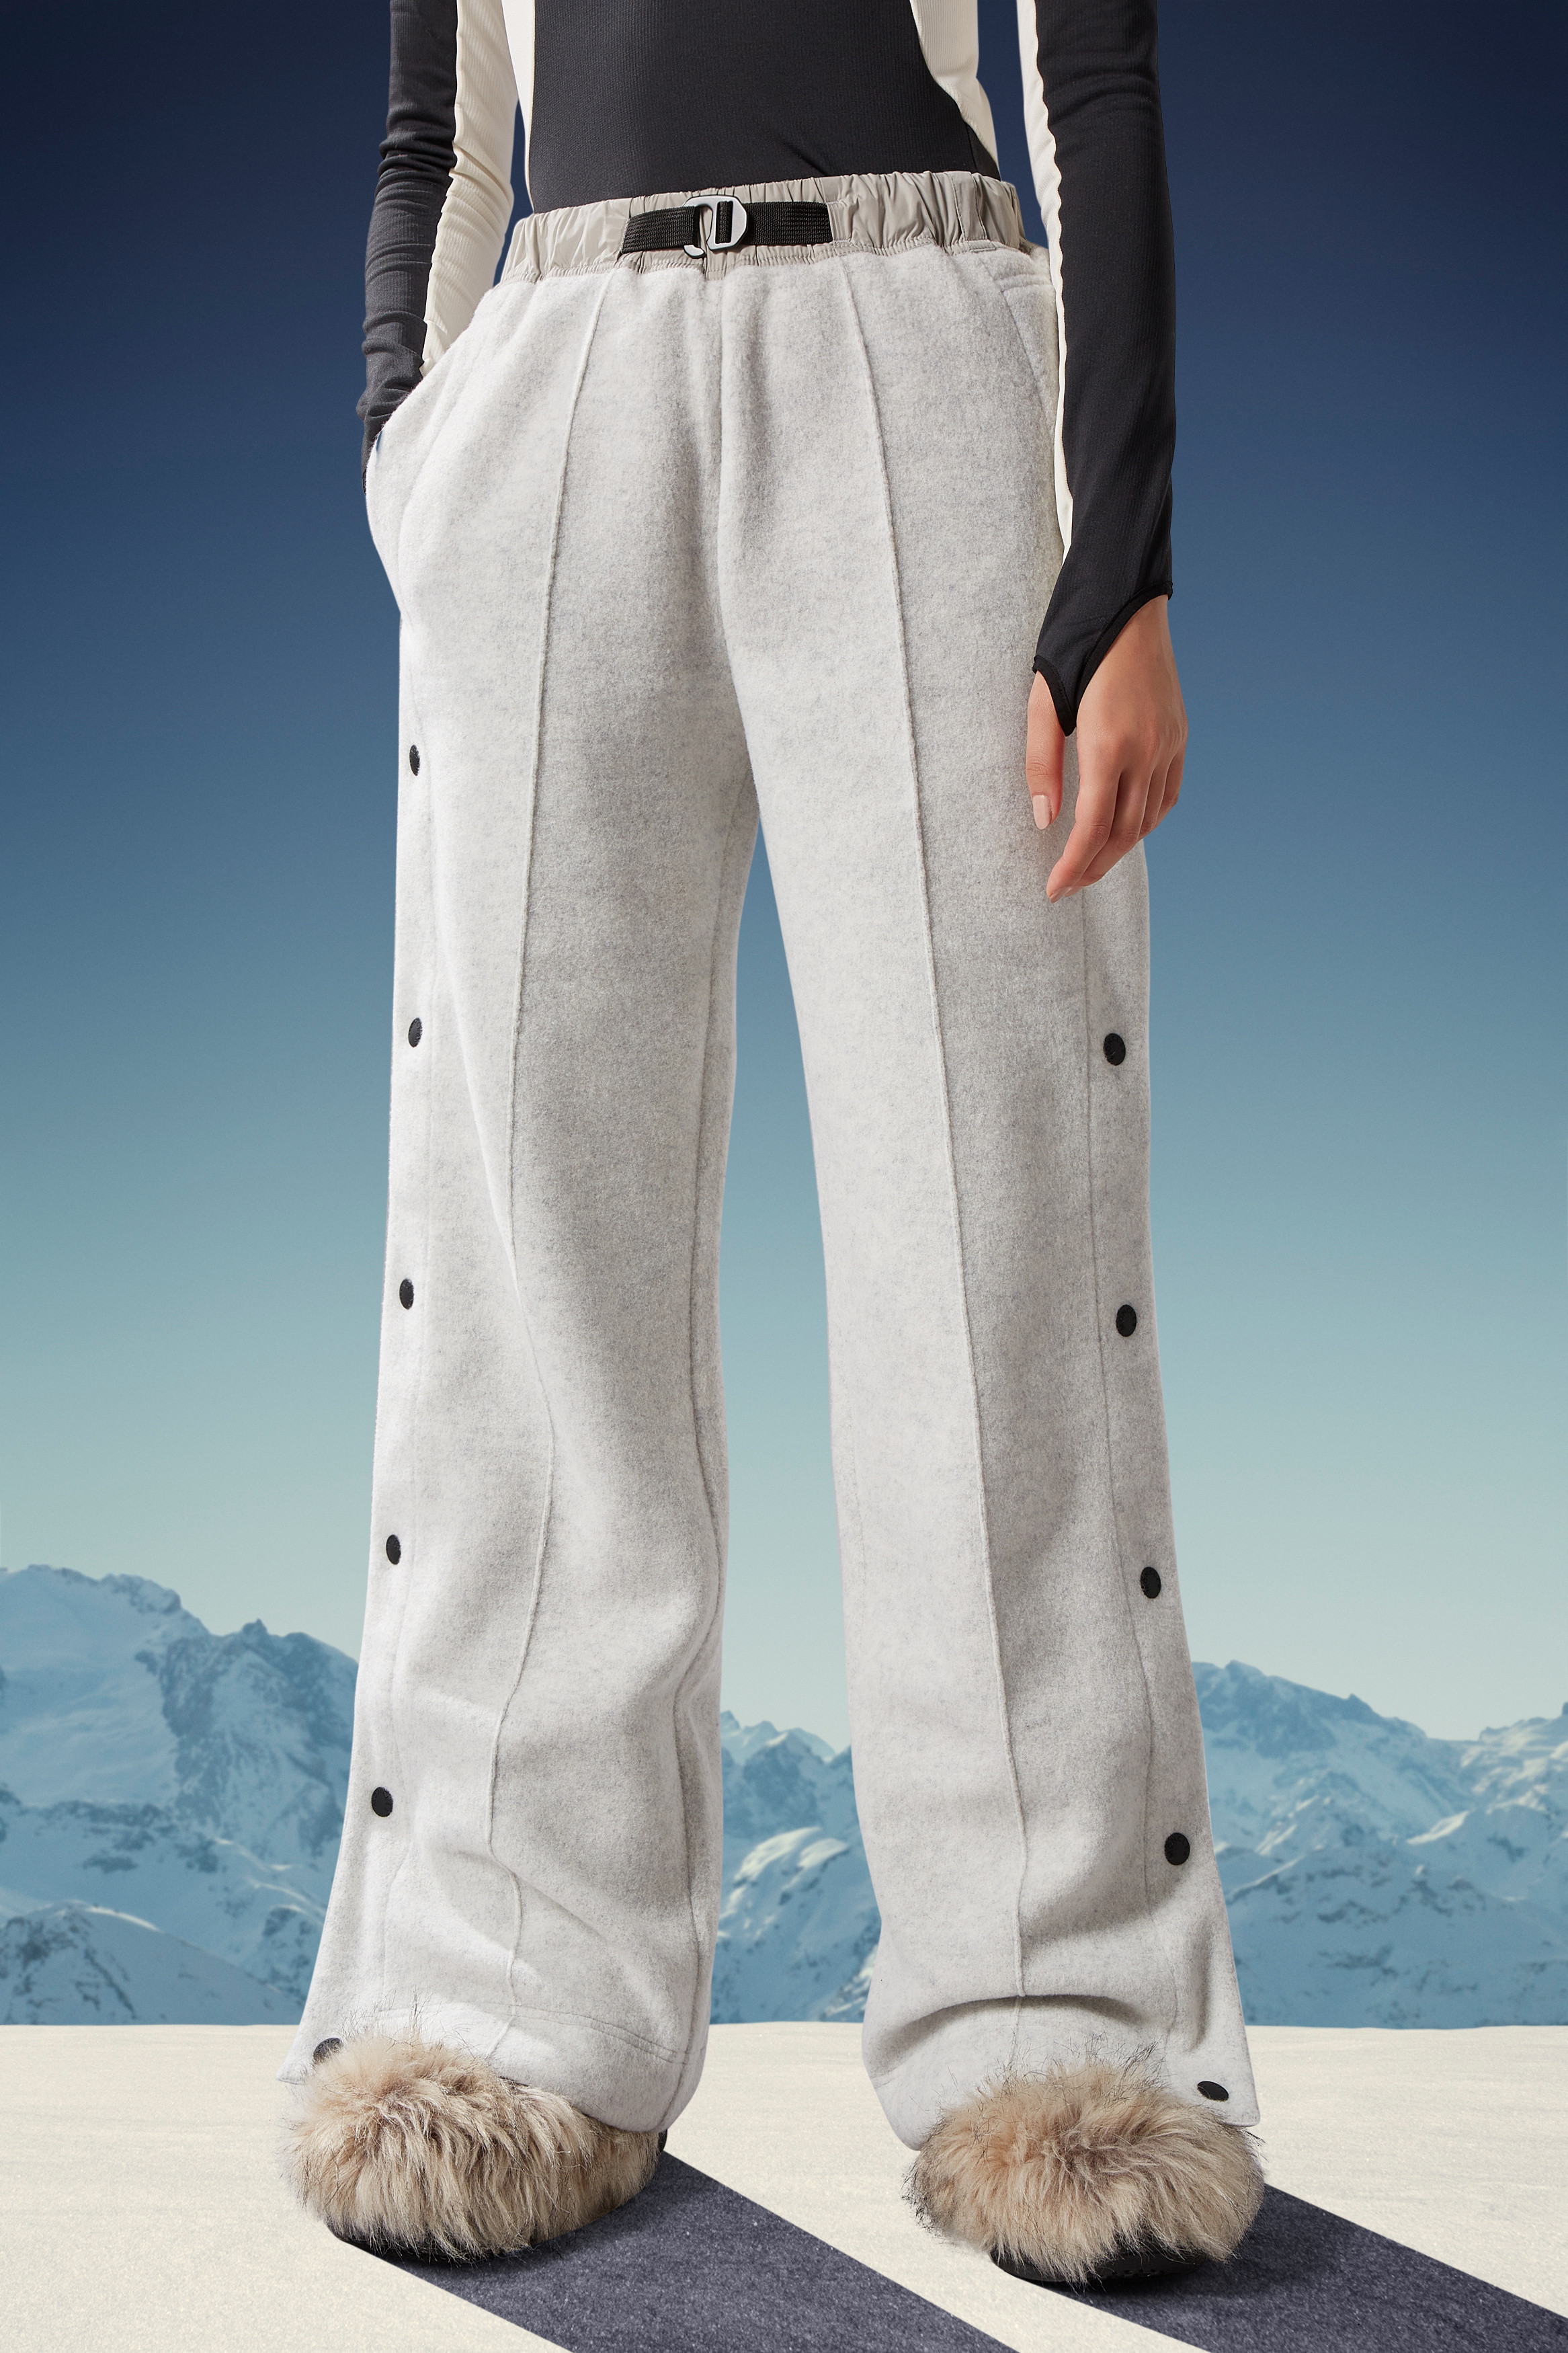 Day-namic pantalones deportivos de forro polar Moncler de Polar de color Neutro de gimnasio y entrenamiento de Pantalones de chándal y joggers Mujer Ropa de Ropa deportiva 